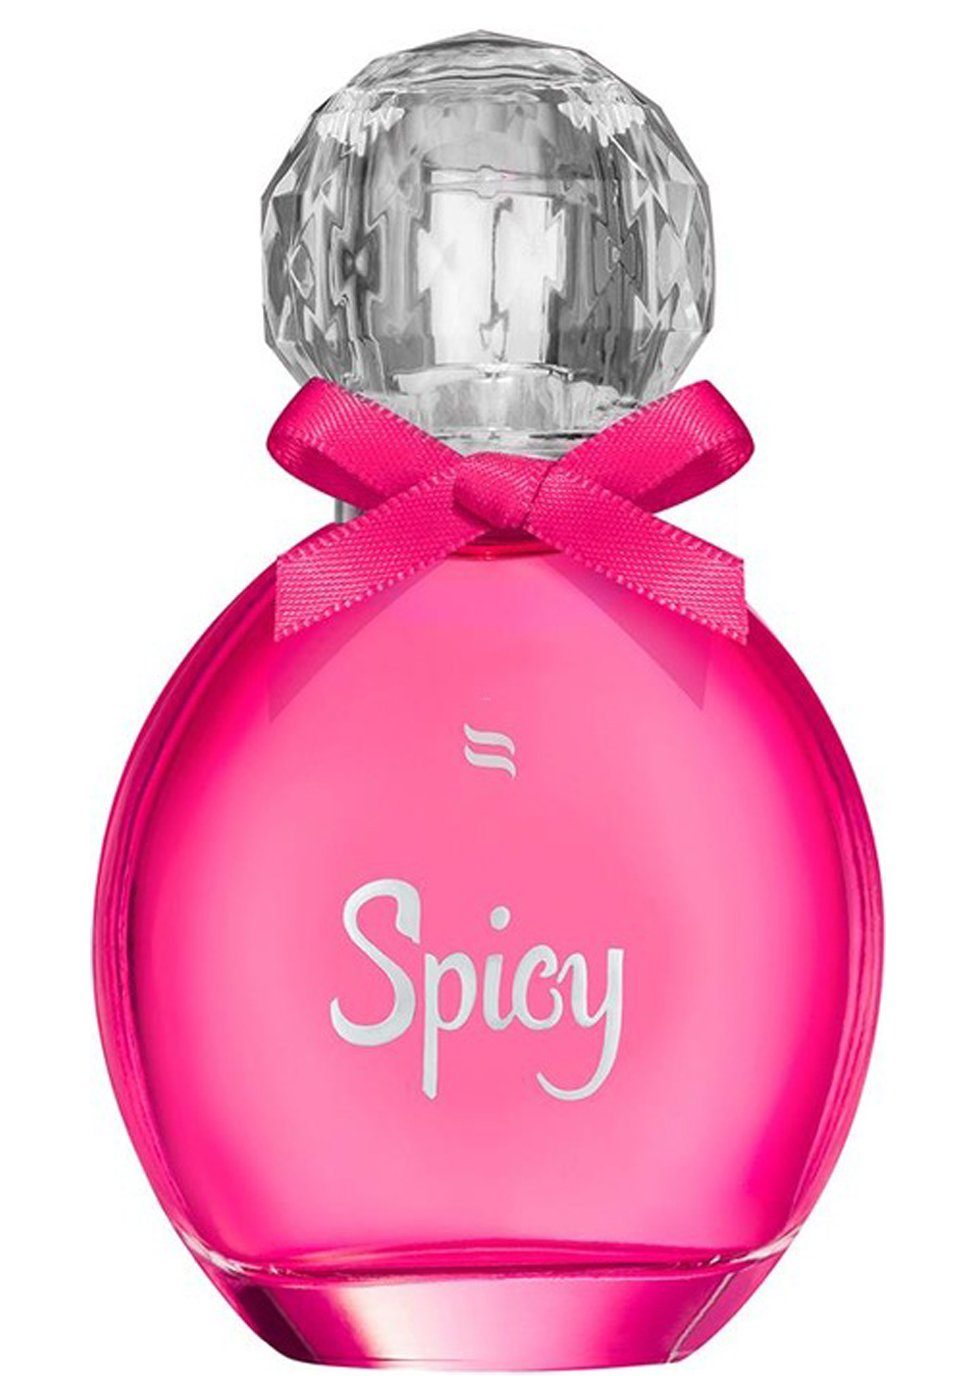 Obsessive Körperspray Parfum mit Pheromonen für die Frau - Spicy